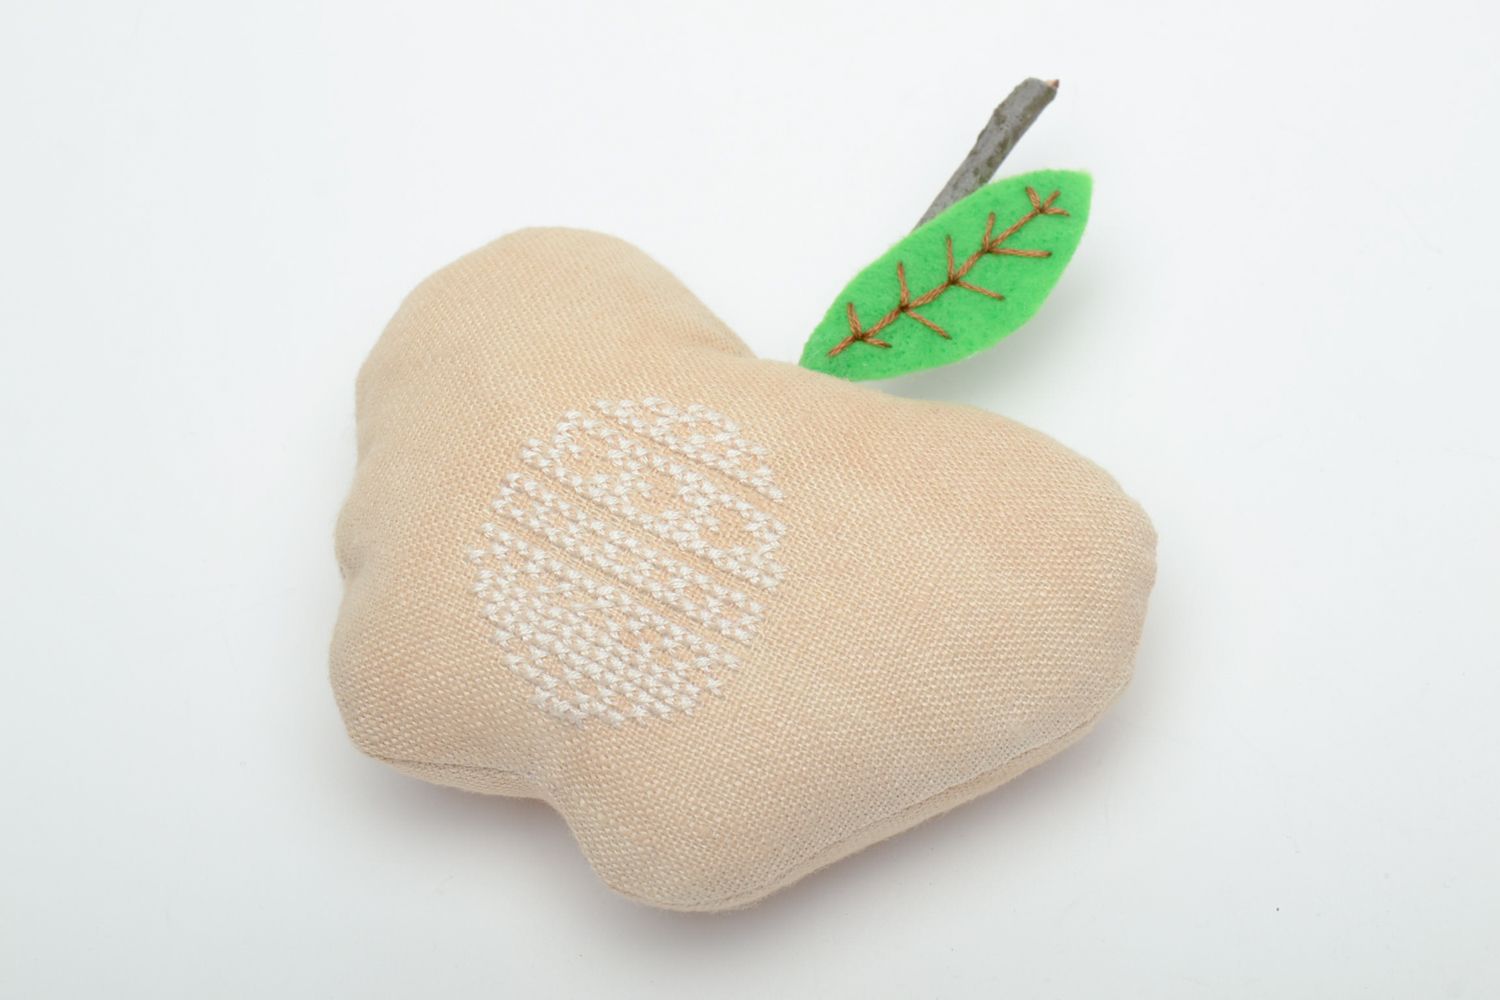 Текстильная игрушка яблоко с вышивкой крестиком фото 2